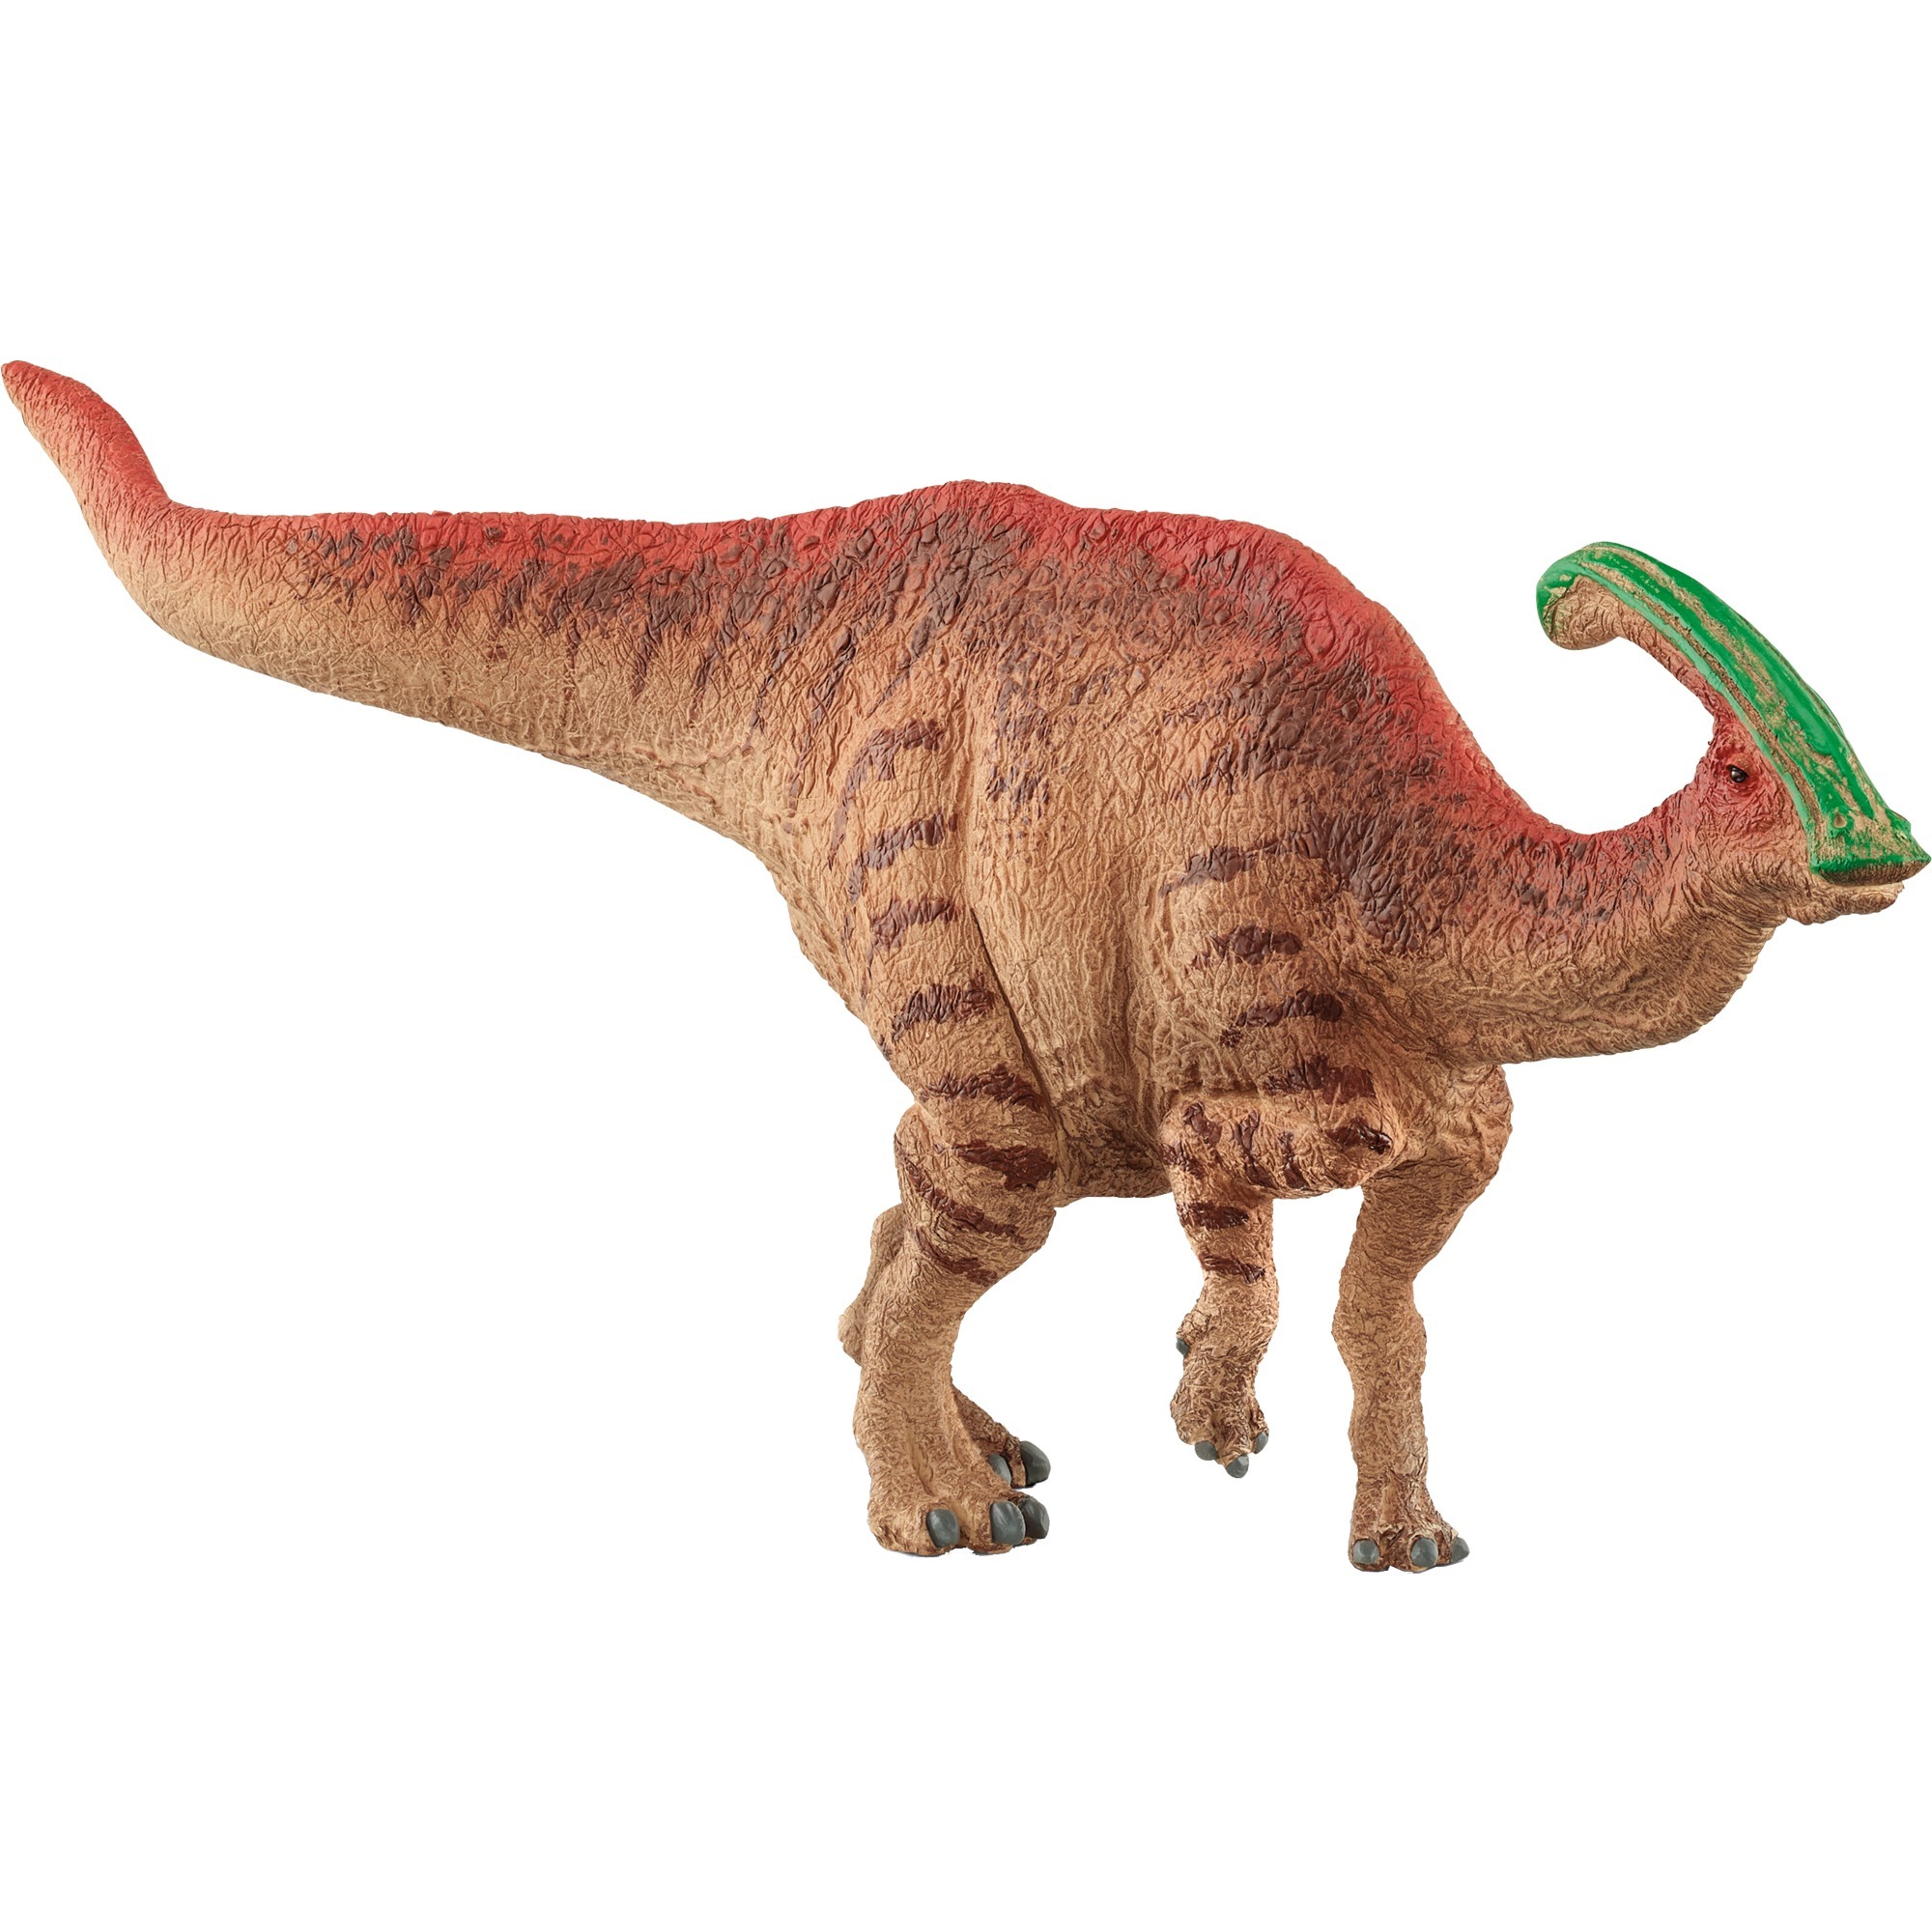 Image of Alternate - Dinosaurs Parasaurolophus, Spielfigur online einkaufen bei Alternate